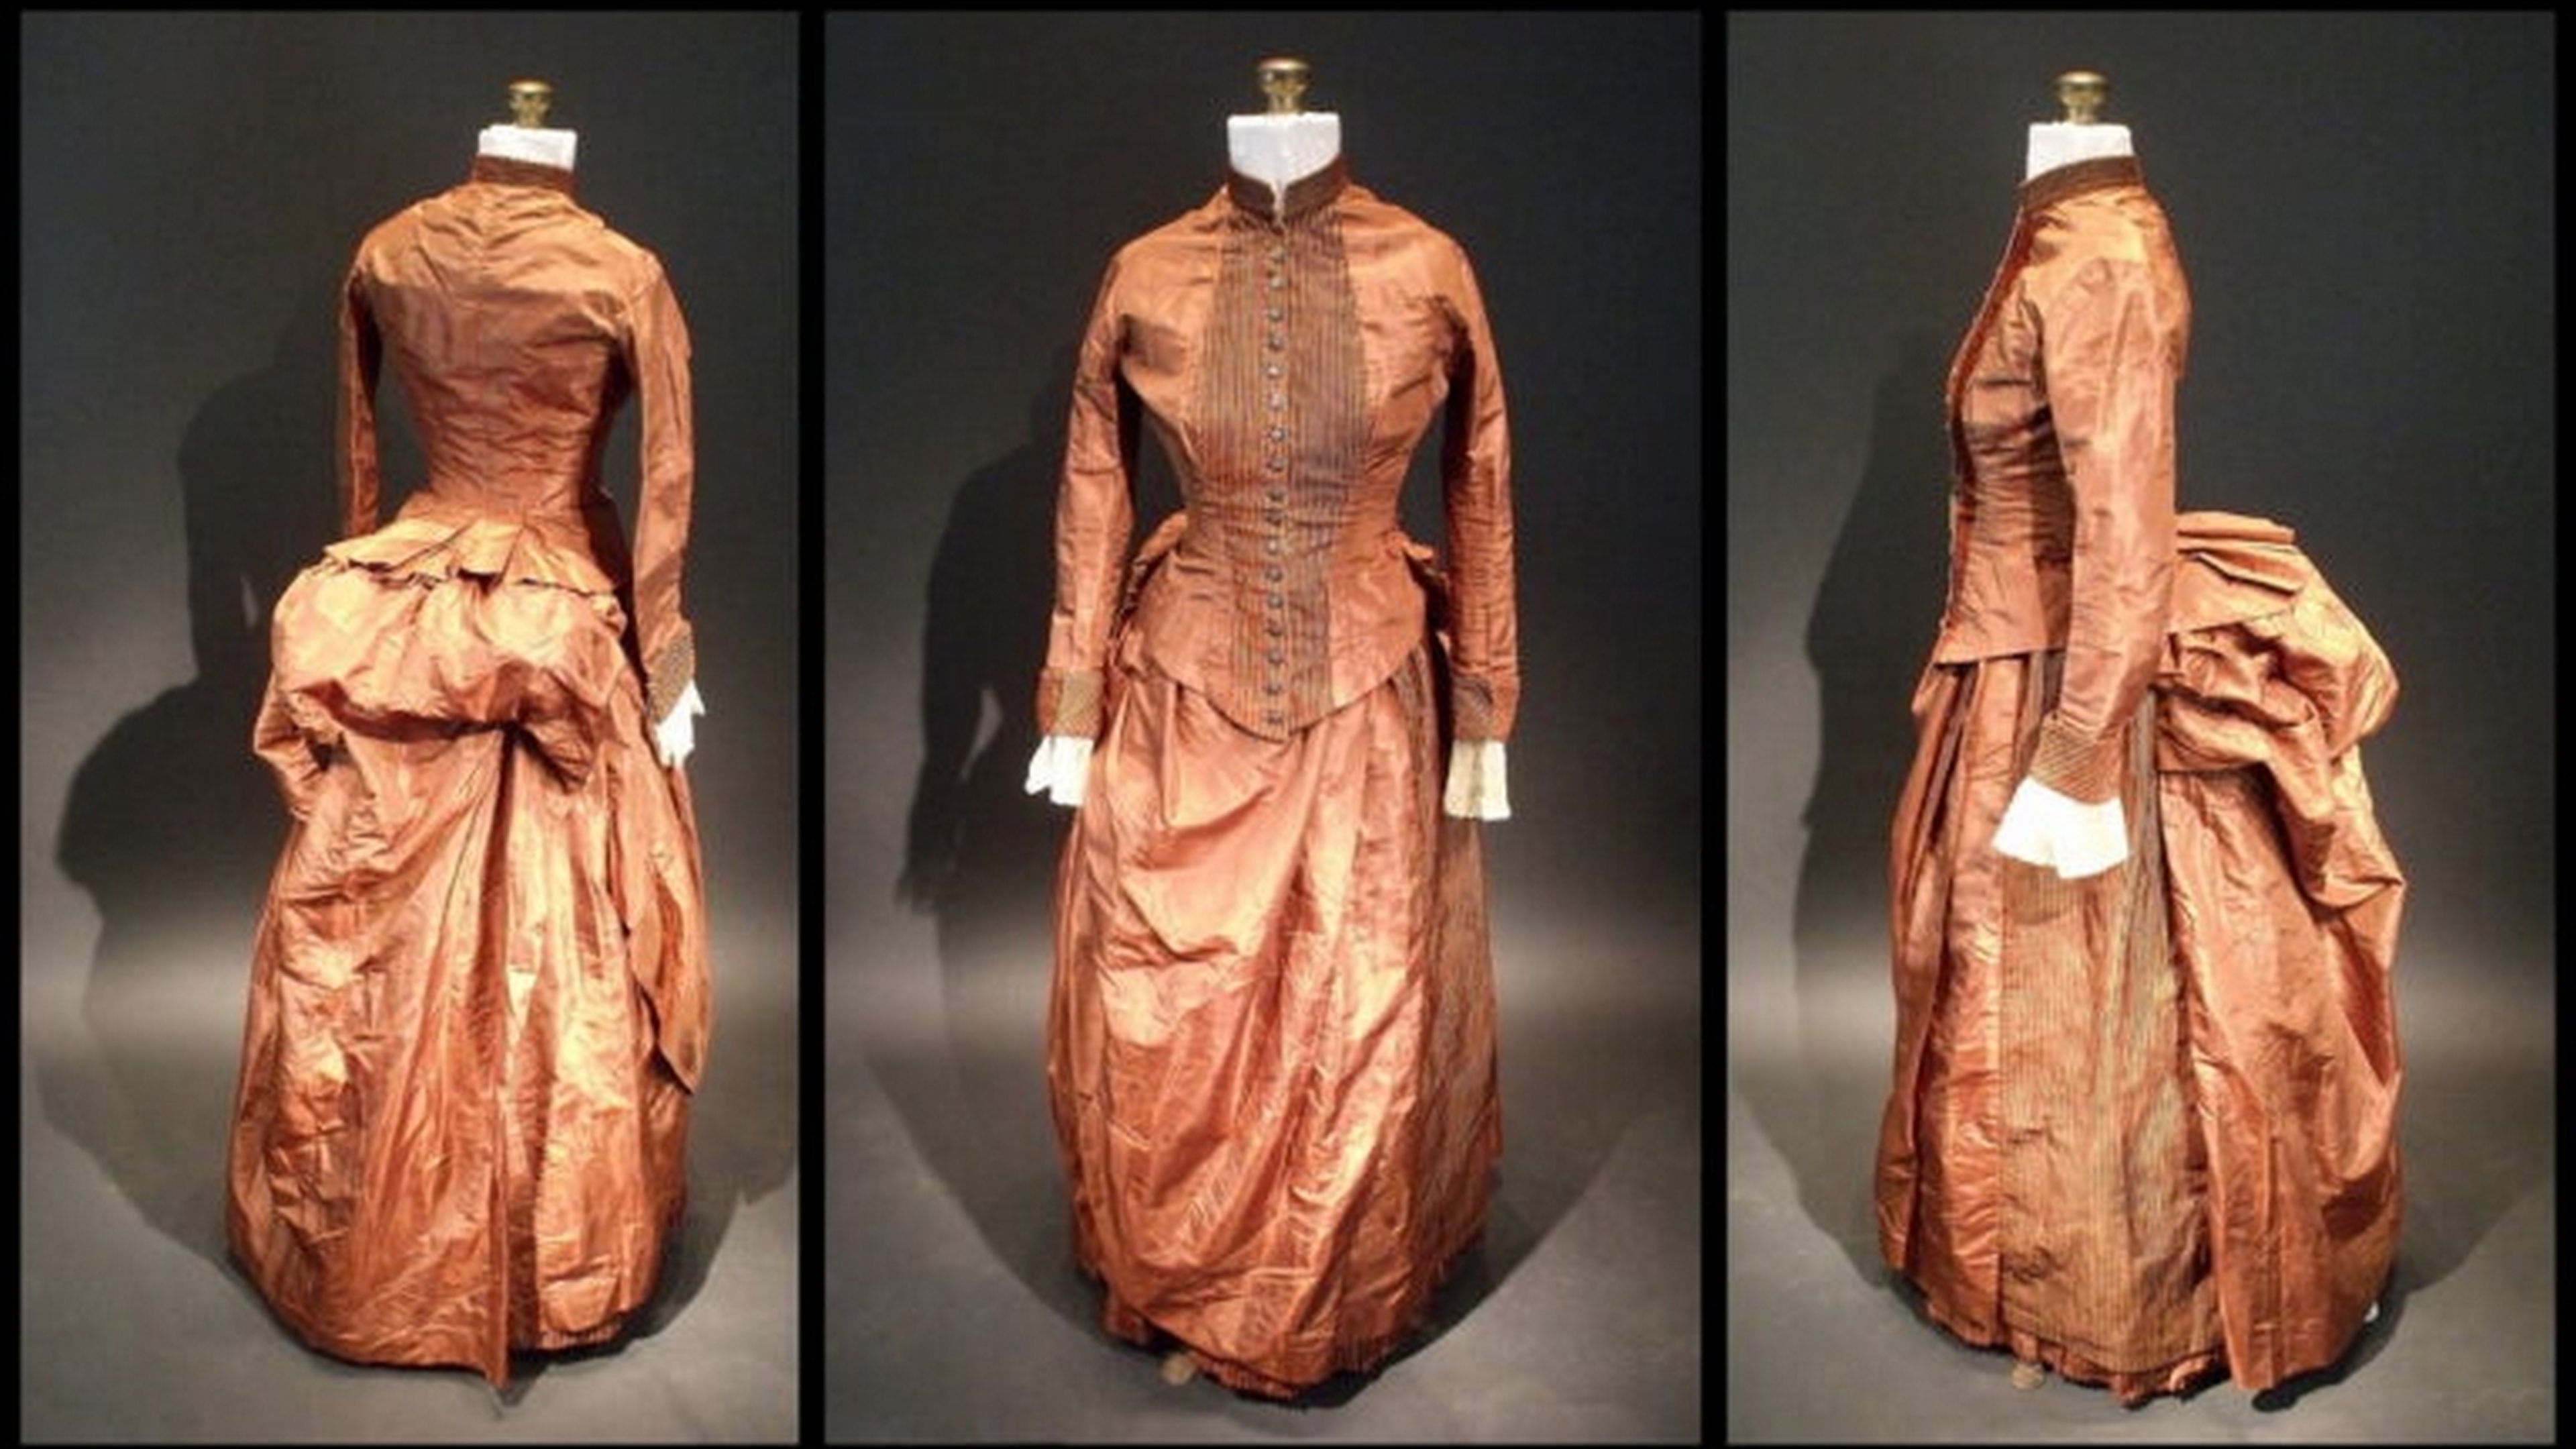 Consiguen resolver el código secreto escondido en un vestido del siglo XIX